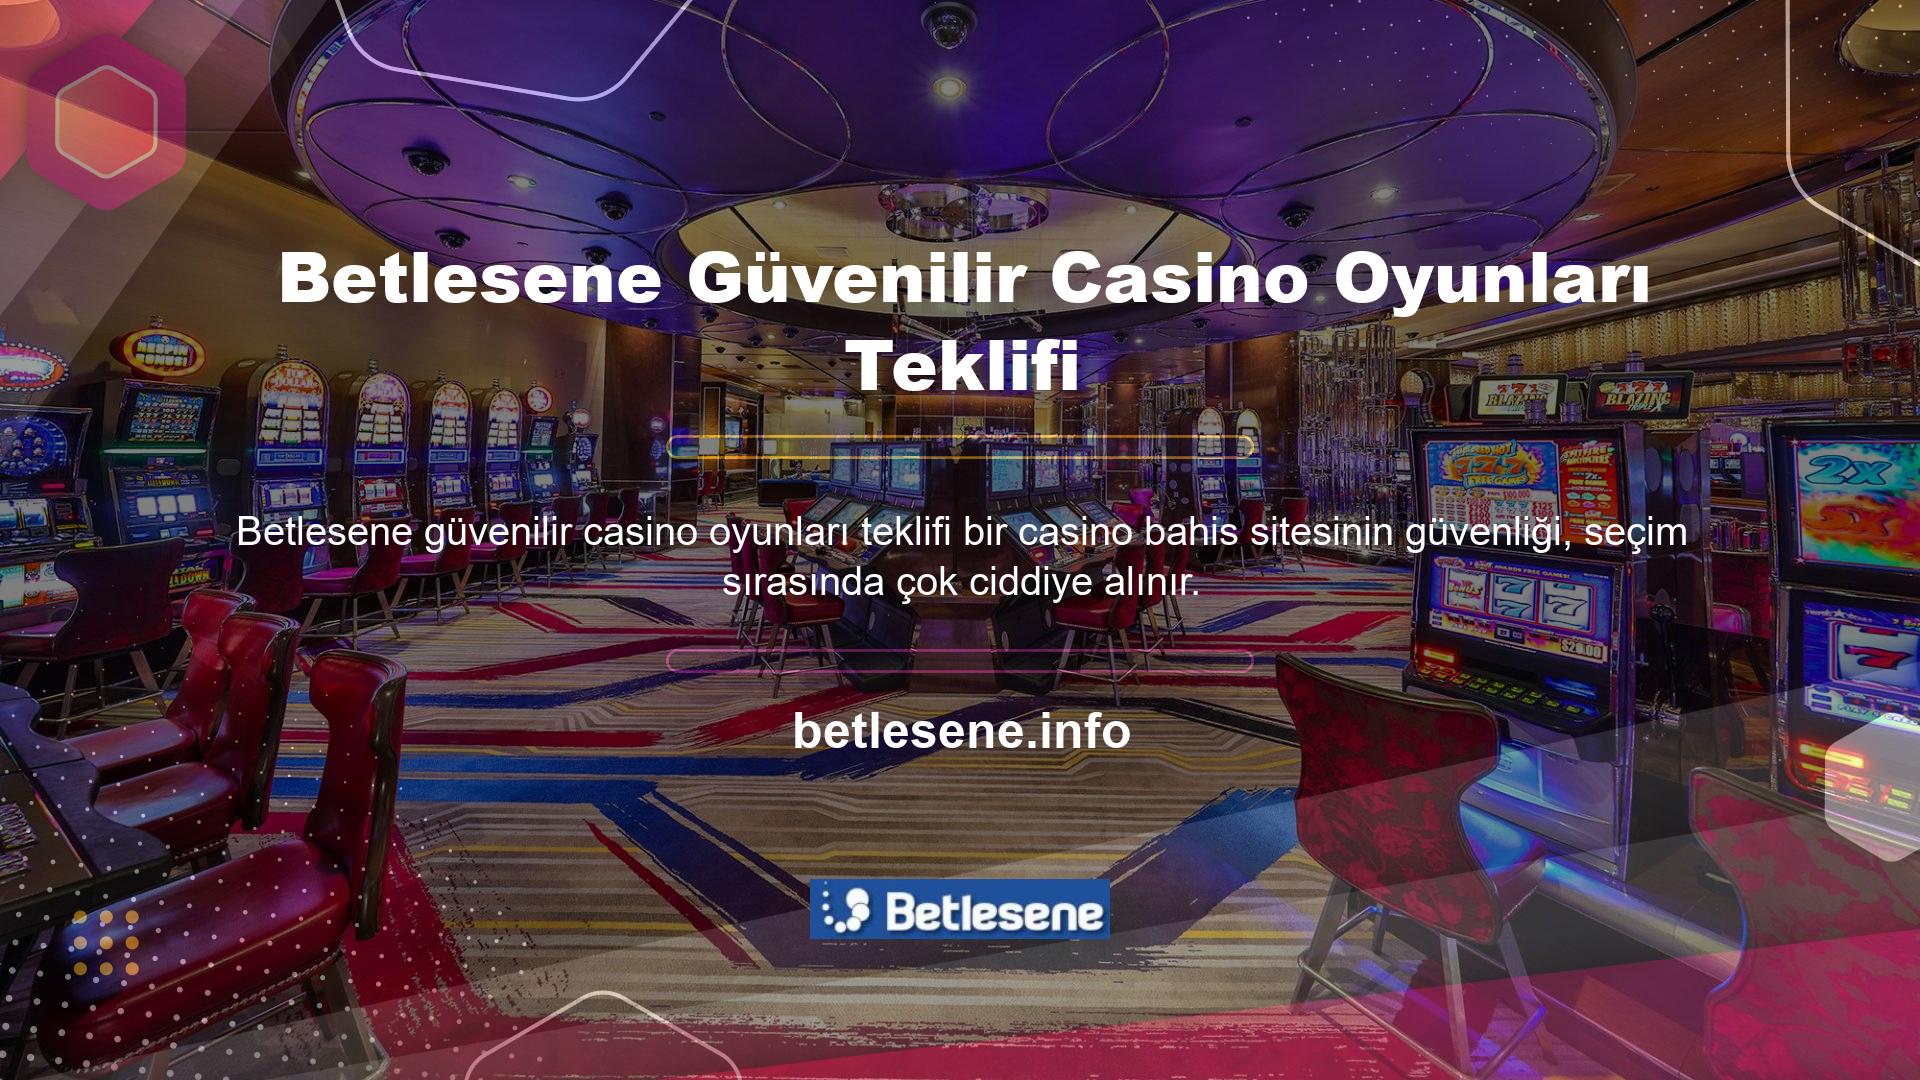 Bahis sitelerinin, Sports Betlesene casino oyunlarının, para yatırma ve çekme işlemlerinin güvenliği son derece yüksektir